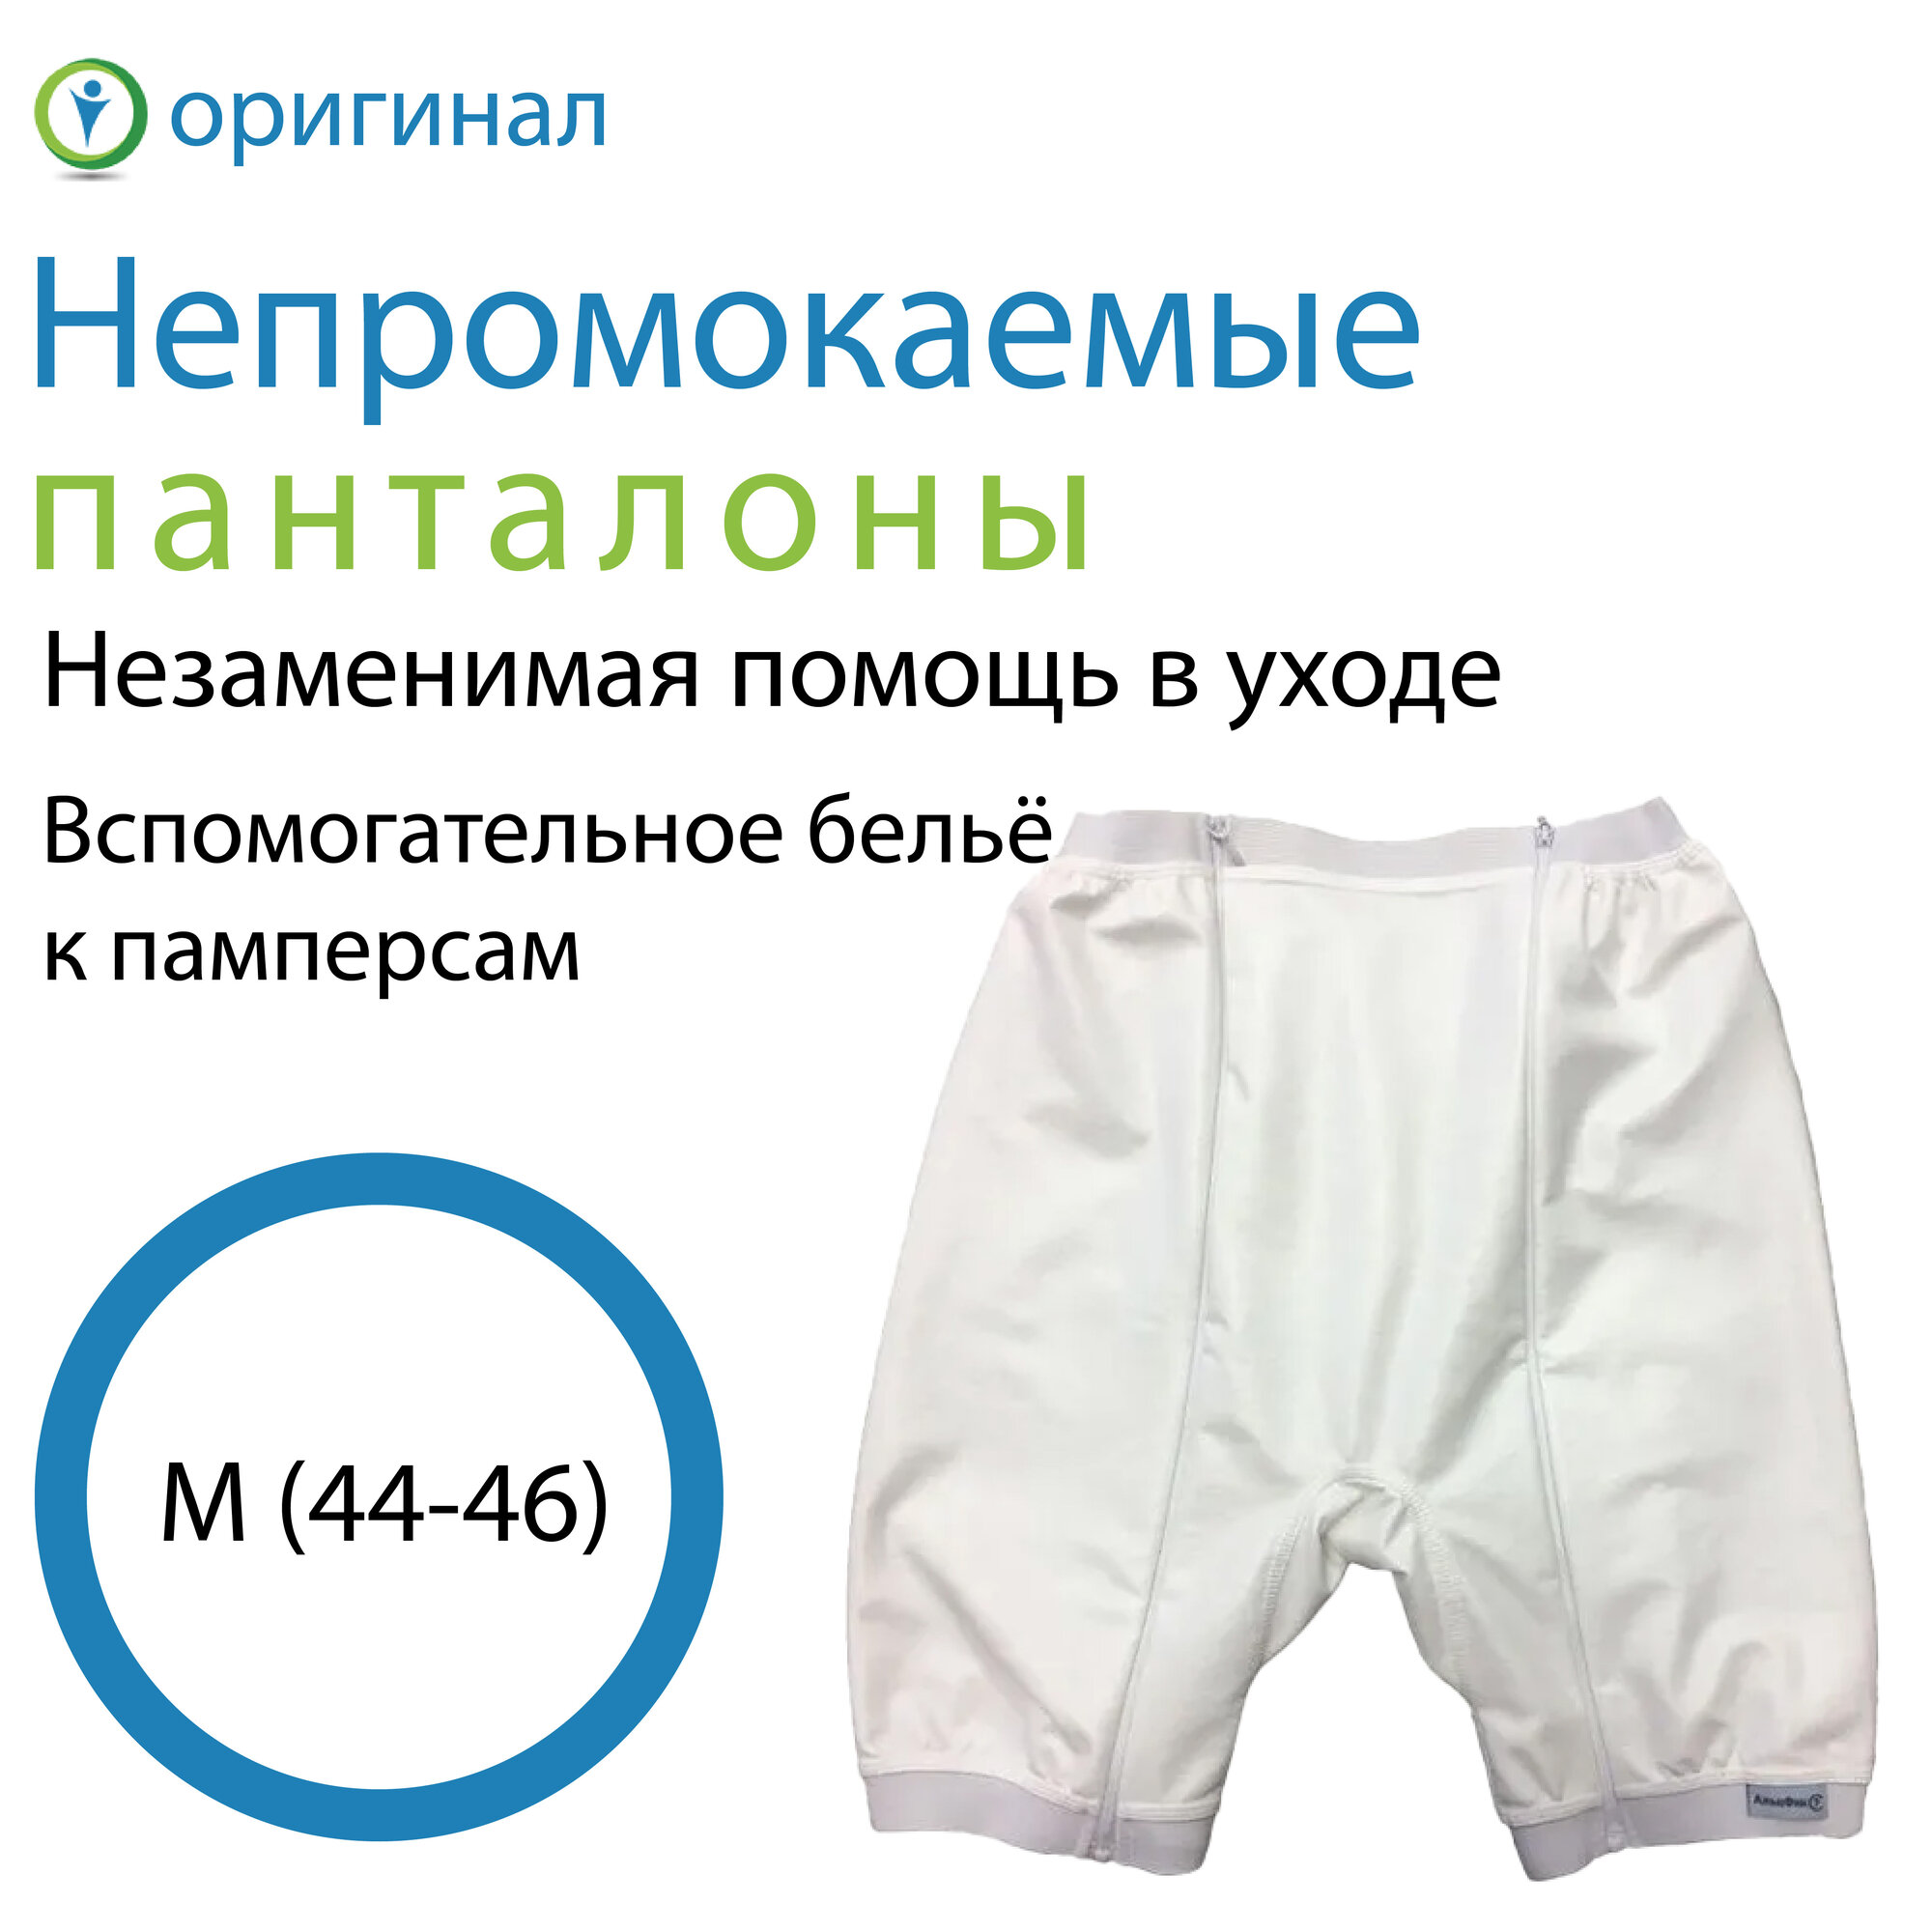 Адаптивная одежда Непромокаемые панталоны M